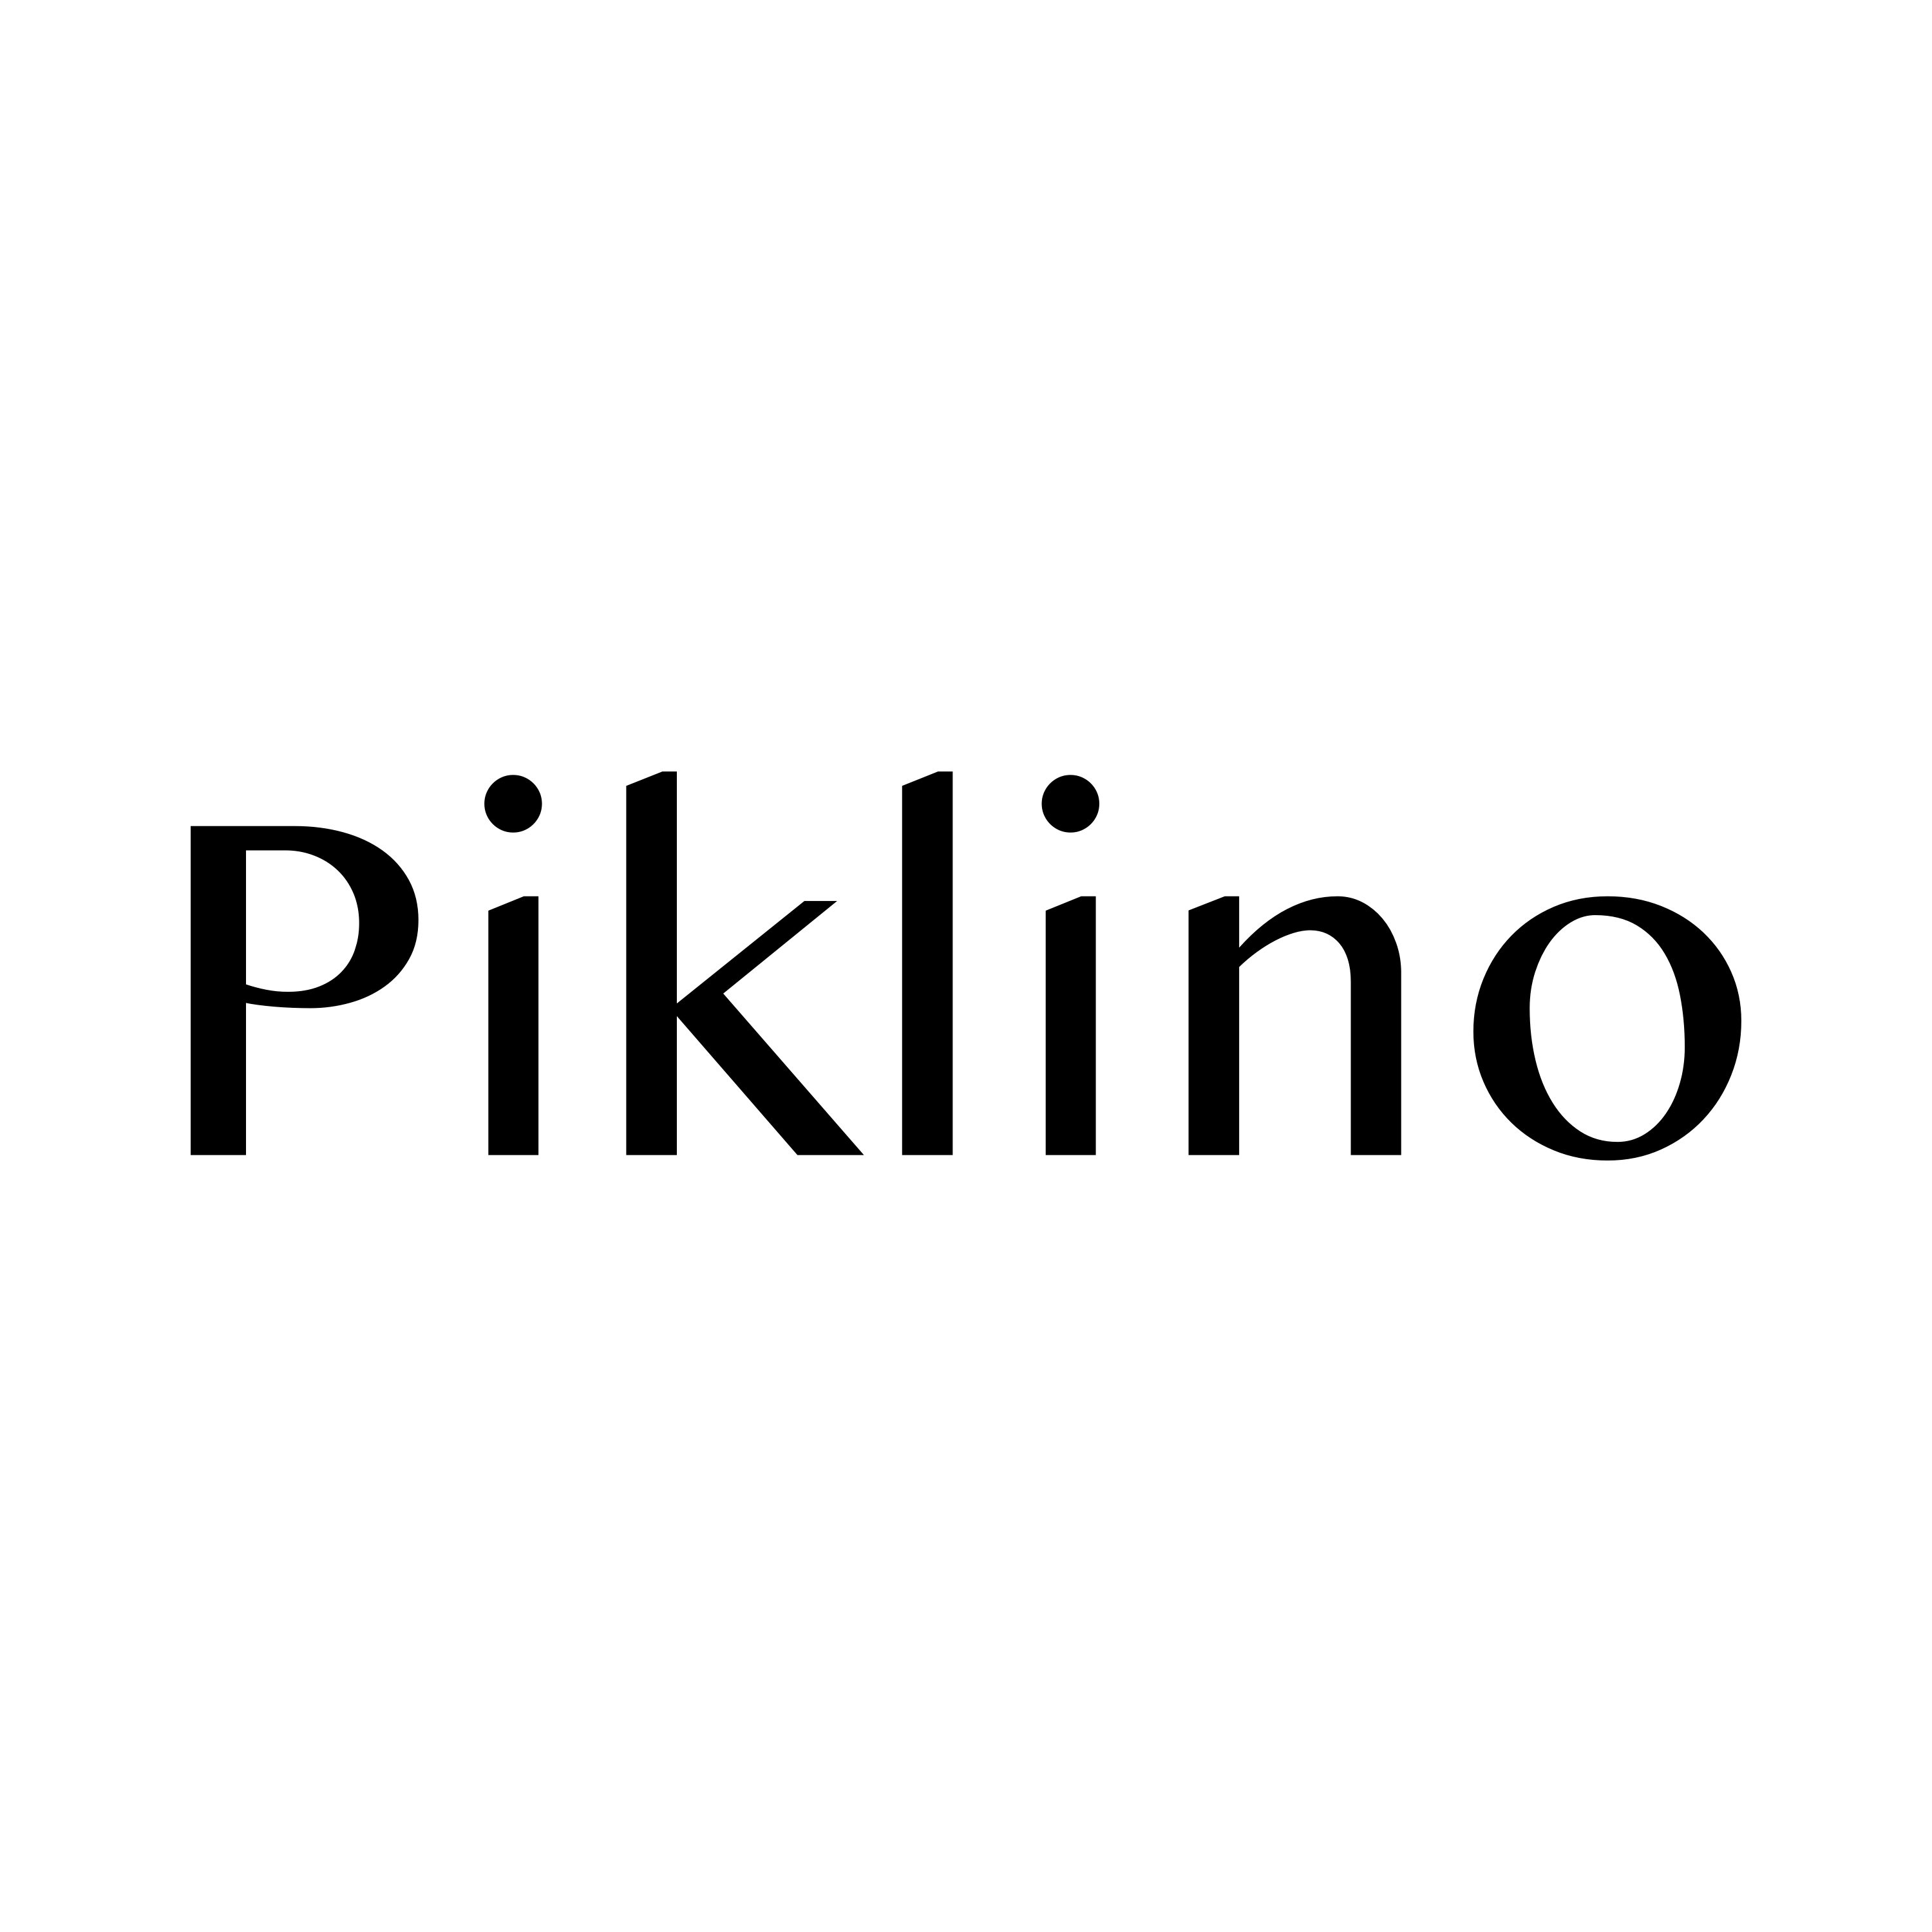 Piklino